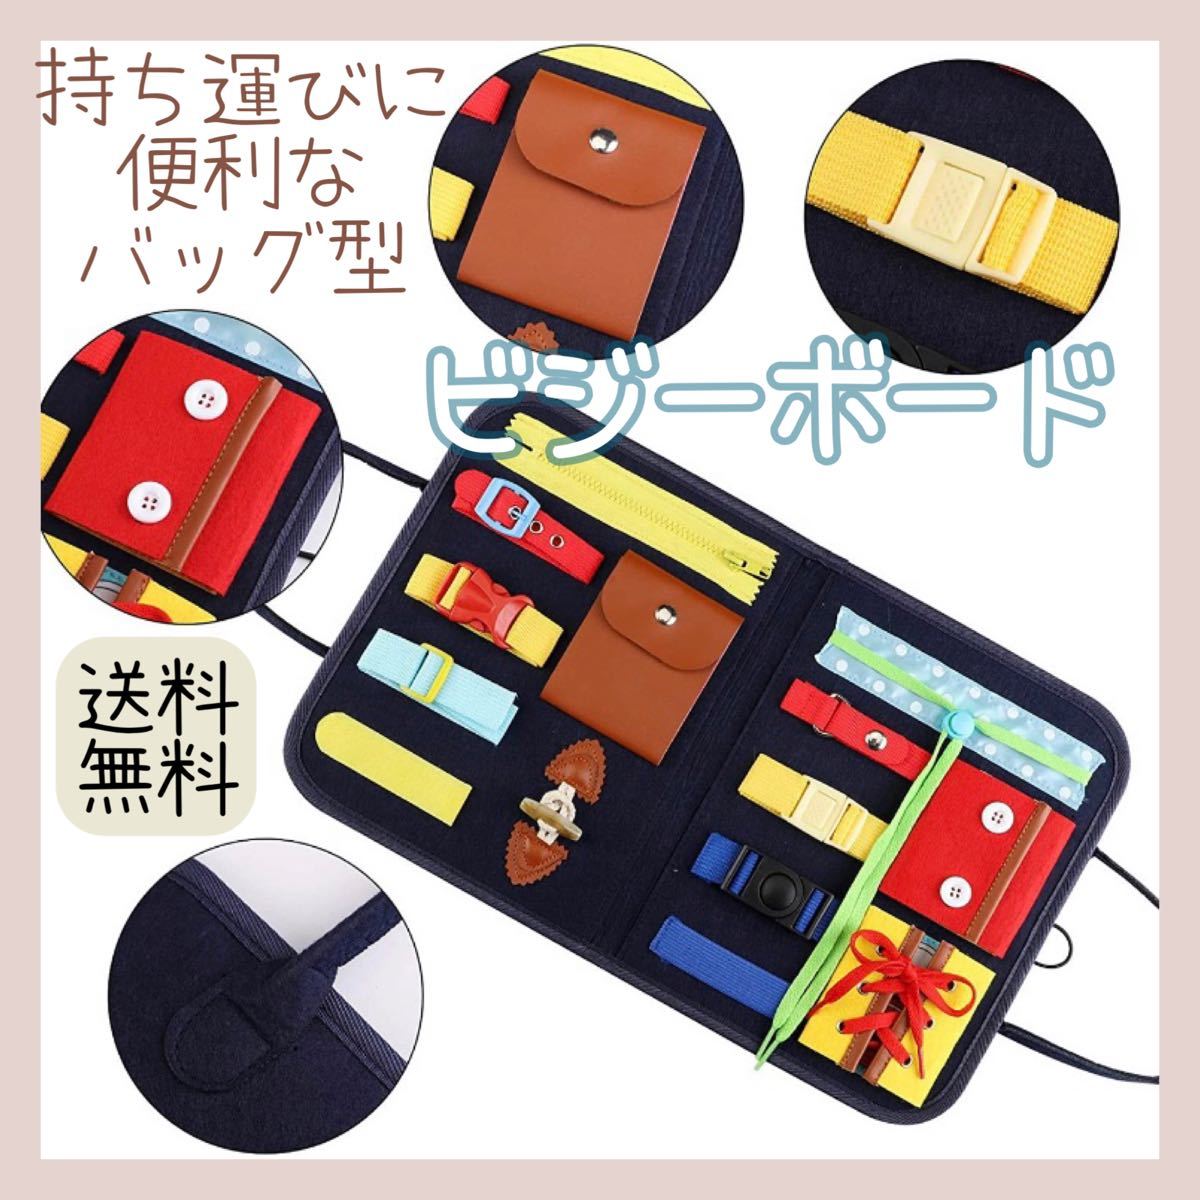 【新品】 ビジーボード 知育玩具 モンテッソーリ 室内 おもちゃ 知育バッグ